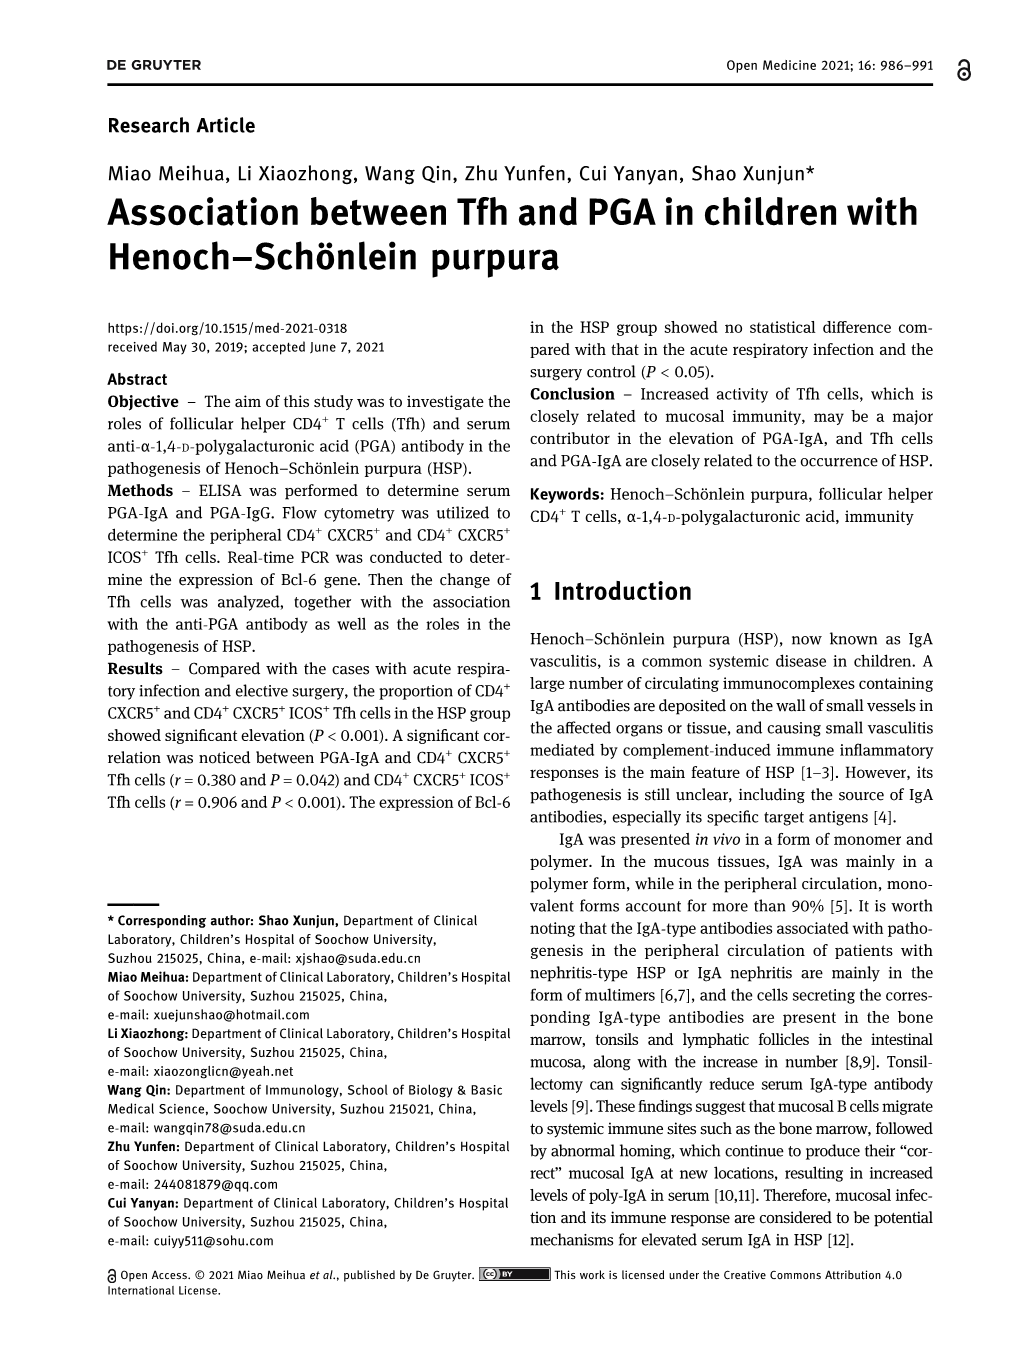 Association Between Tfh and PGA in Children with Henoch–Schönlein Purpura